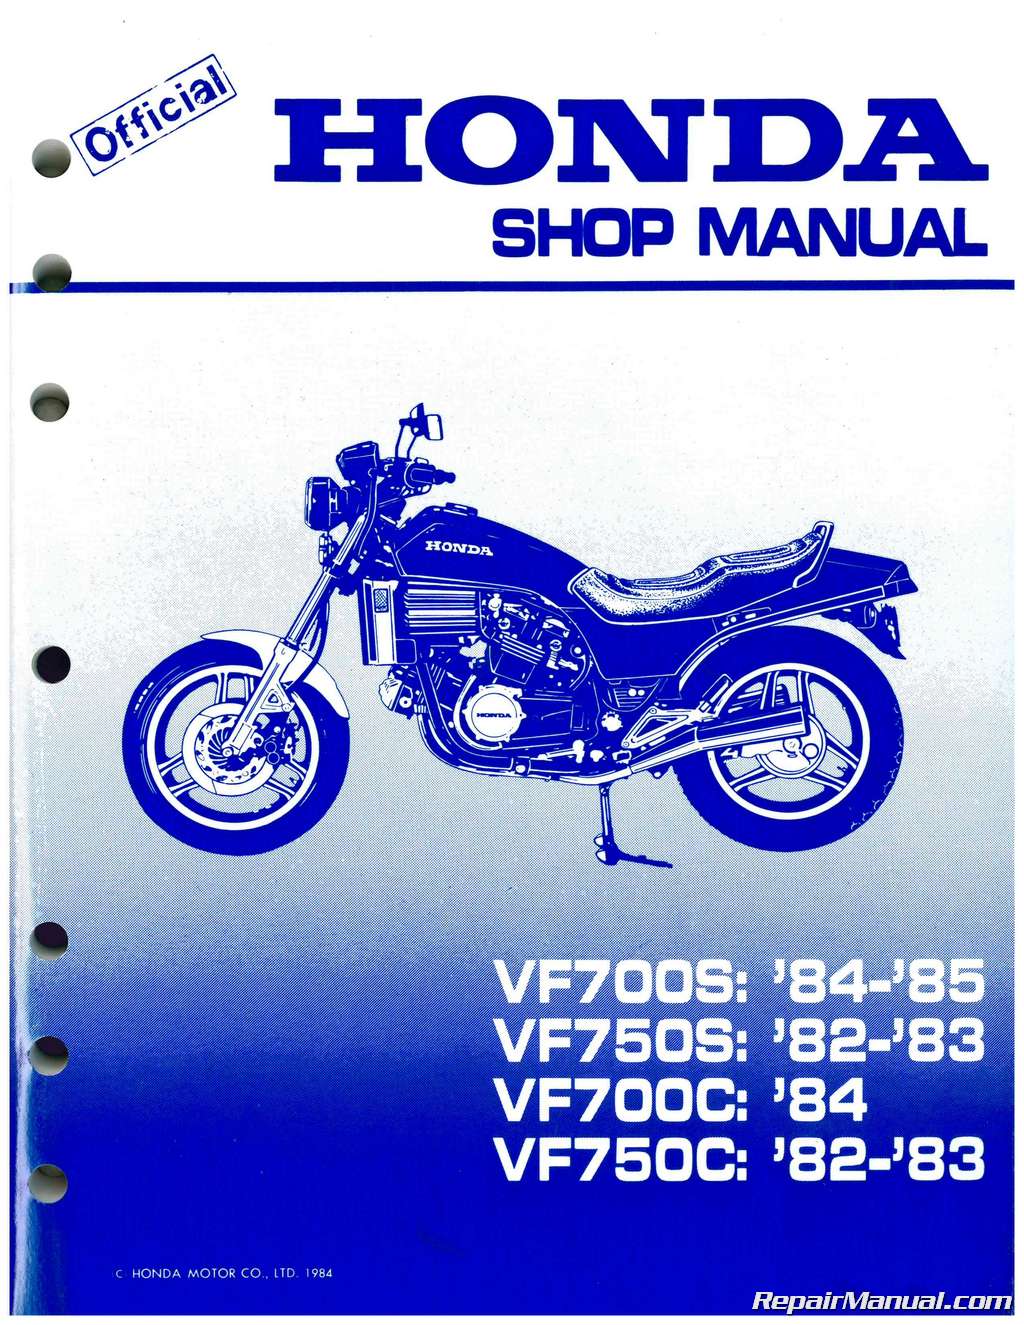 1982 Honda magna repair manual #7